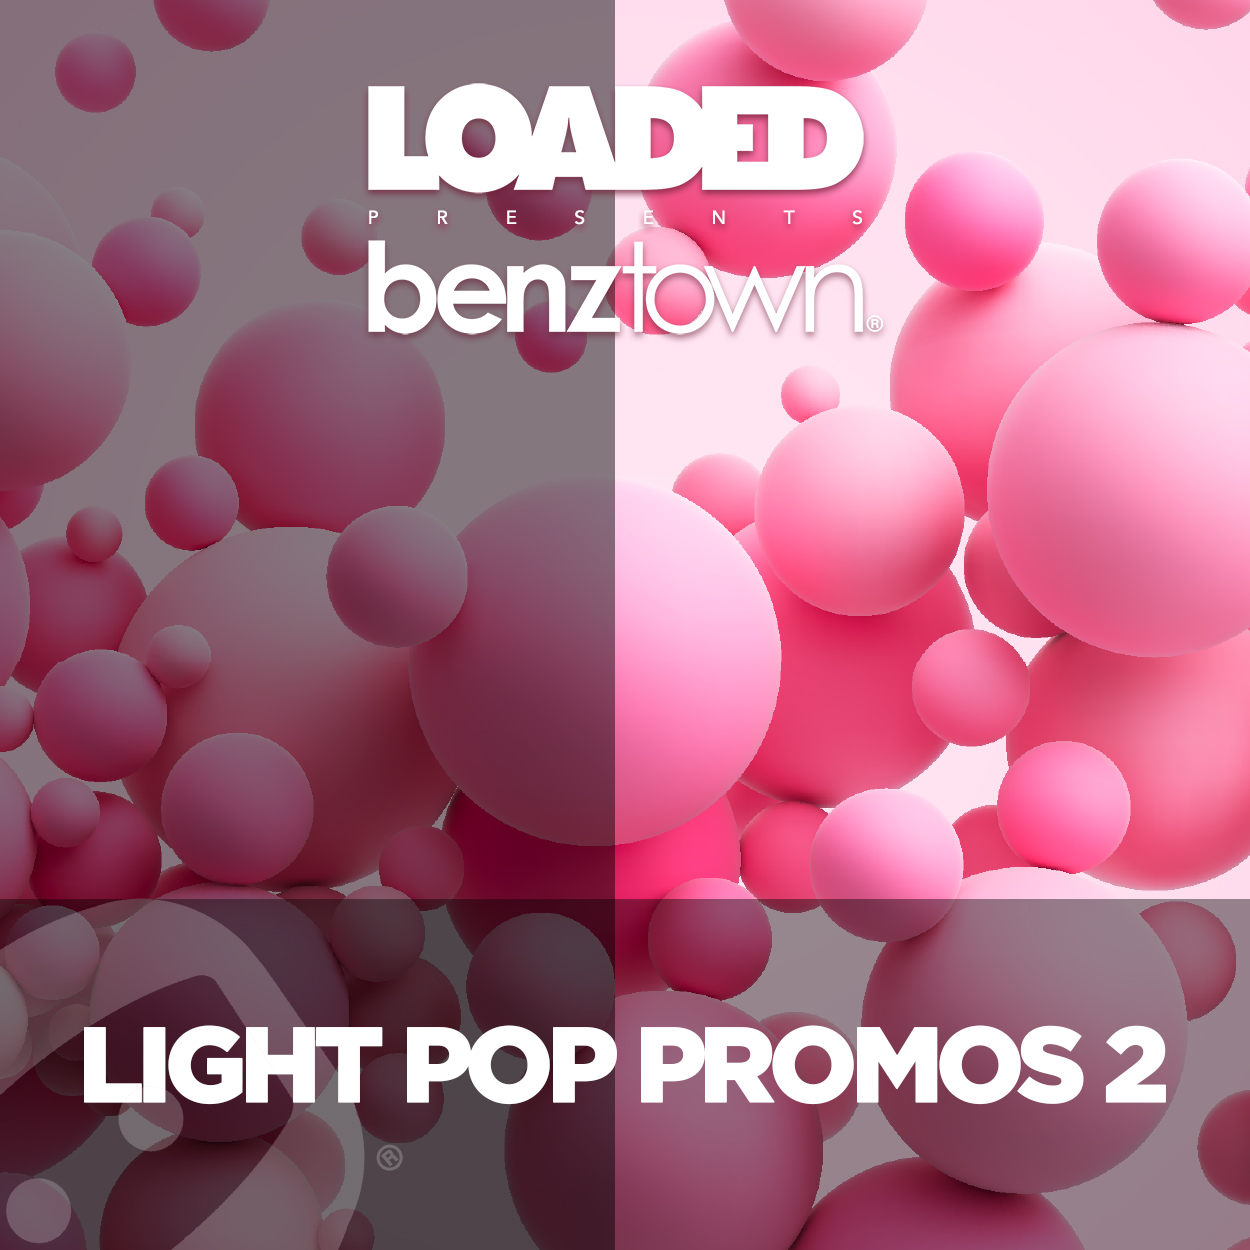 LPM 872 - Light Pop Promos 2 - Album Cover.jpg